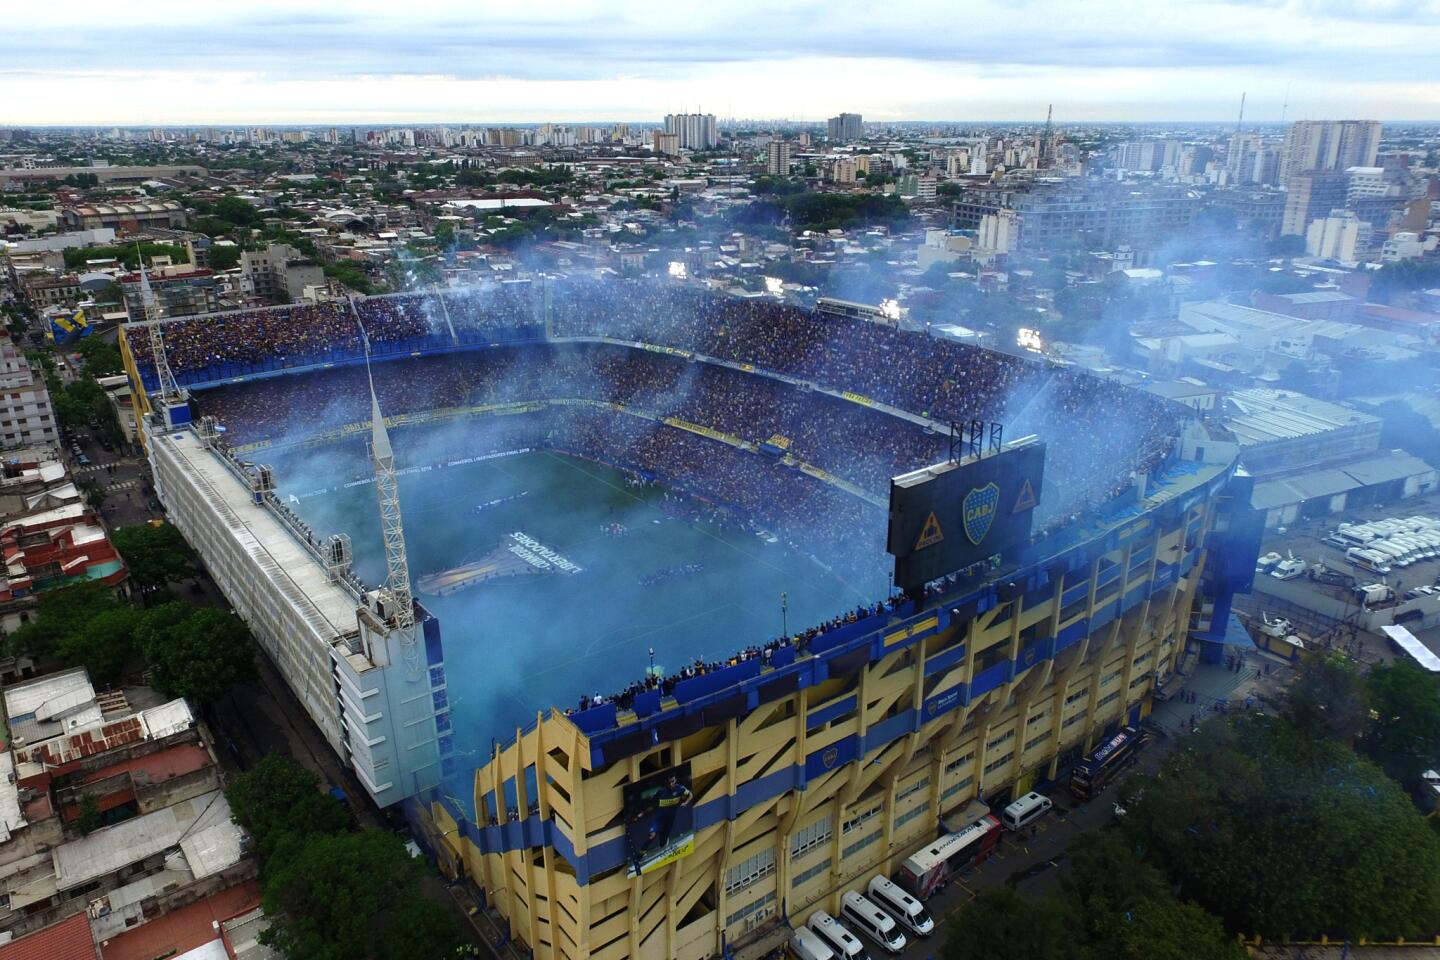 Boca Juniors v River Plate - Copa CONMEBOL Libertadores 2018